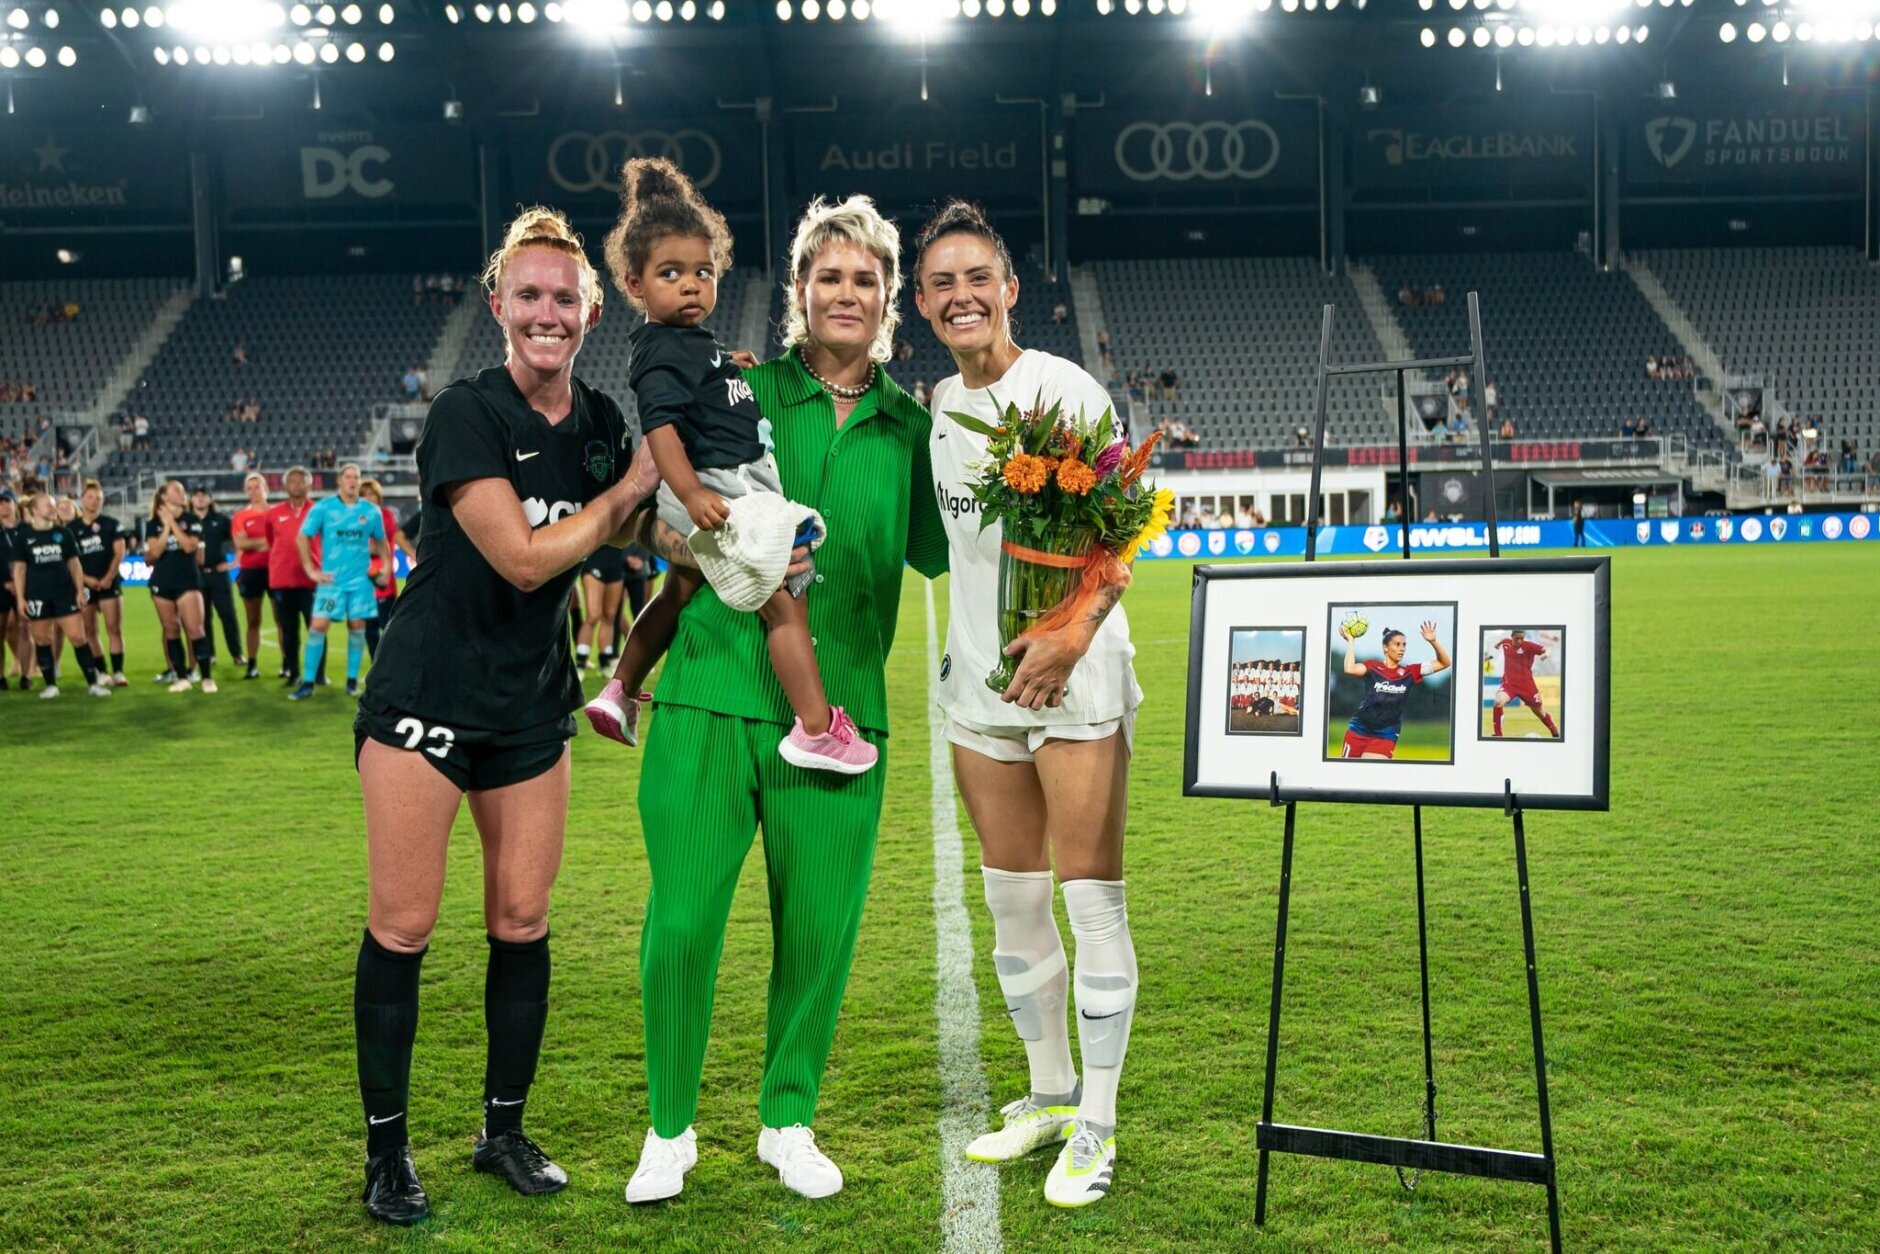 Former US women’s soccer star Ali Krieger honored by Washington Spirit ...